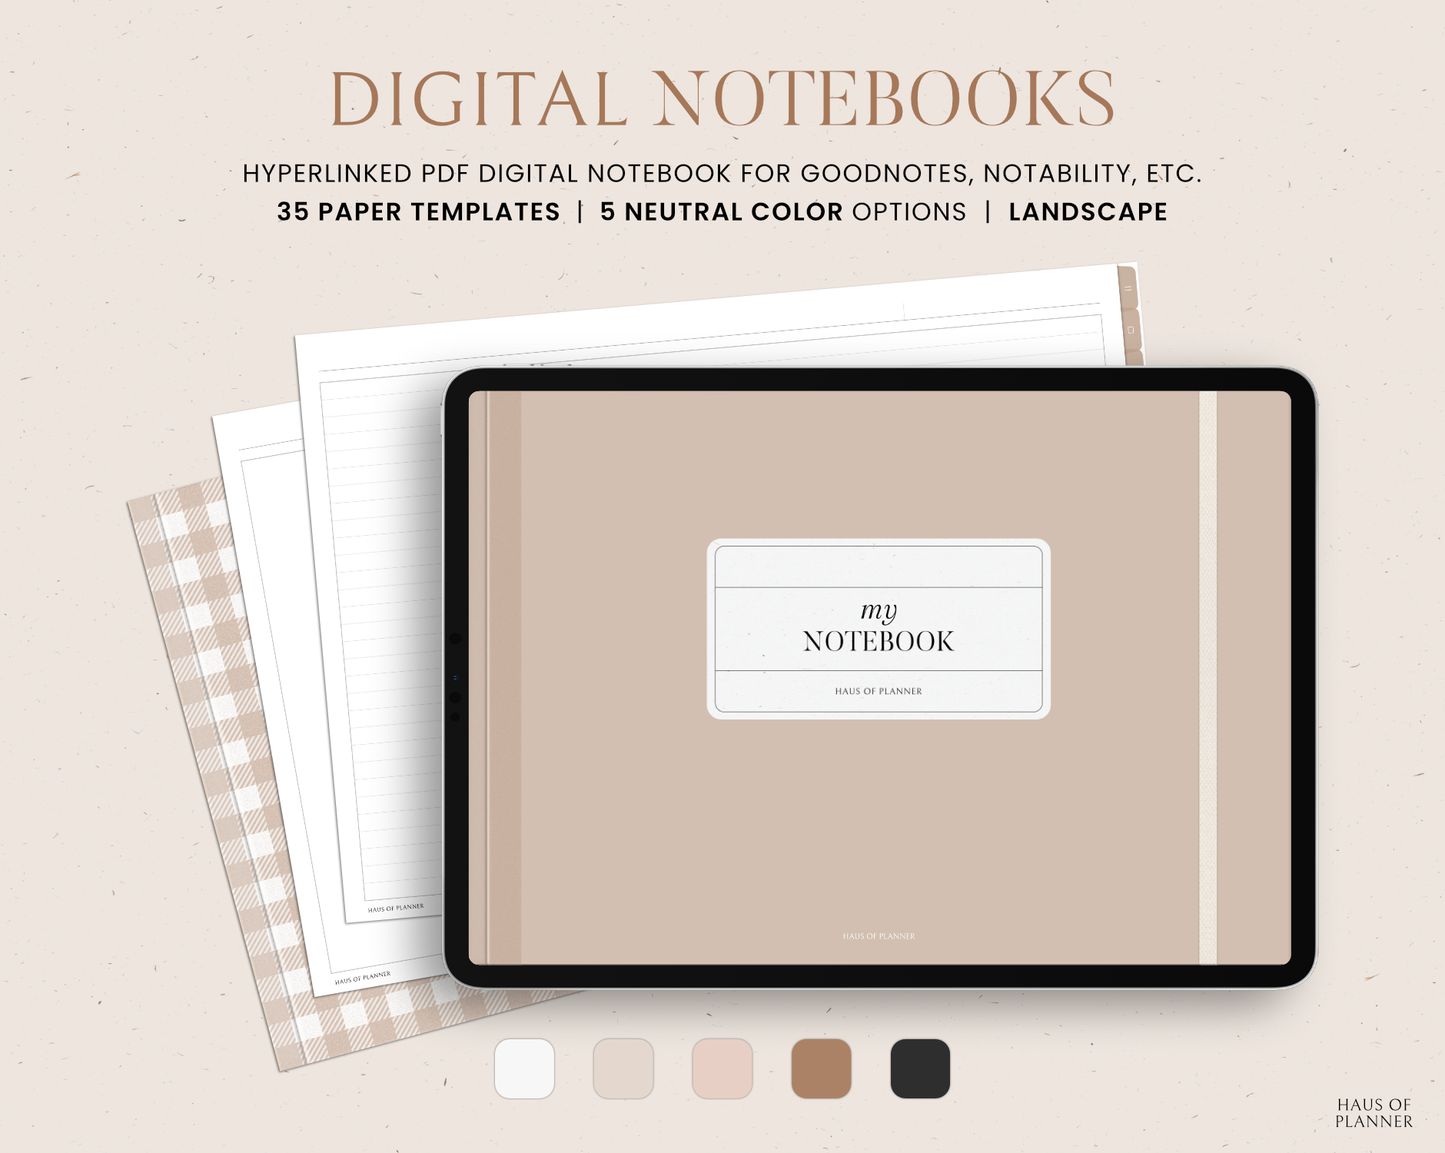 12 Subject Digital Notebooks | Landscape | 5 Neutral Colors